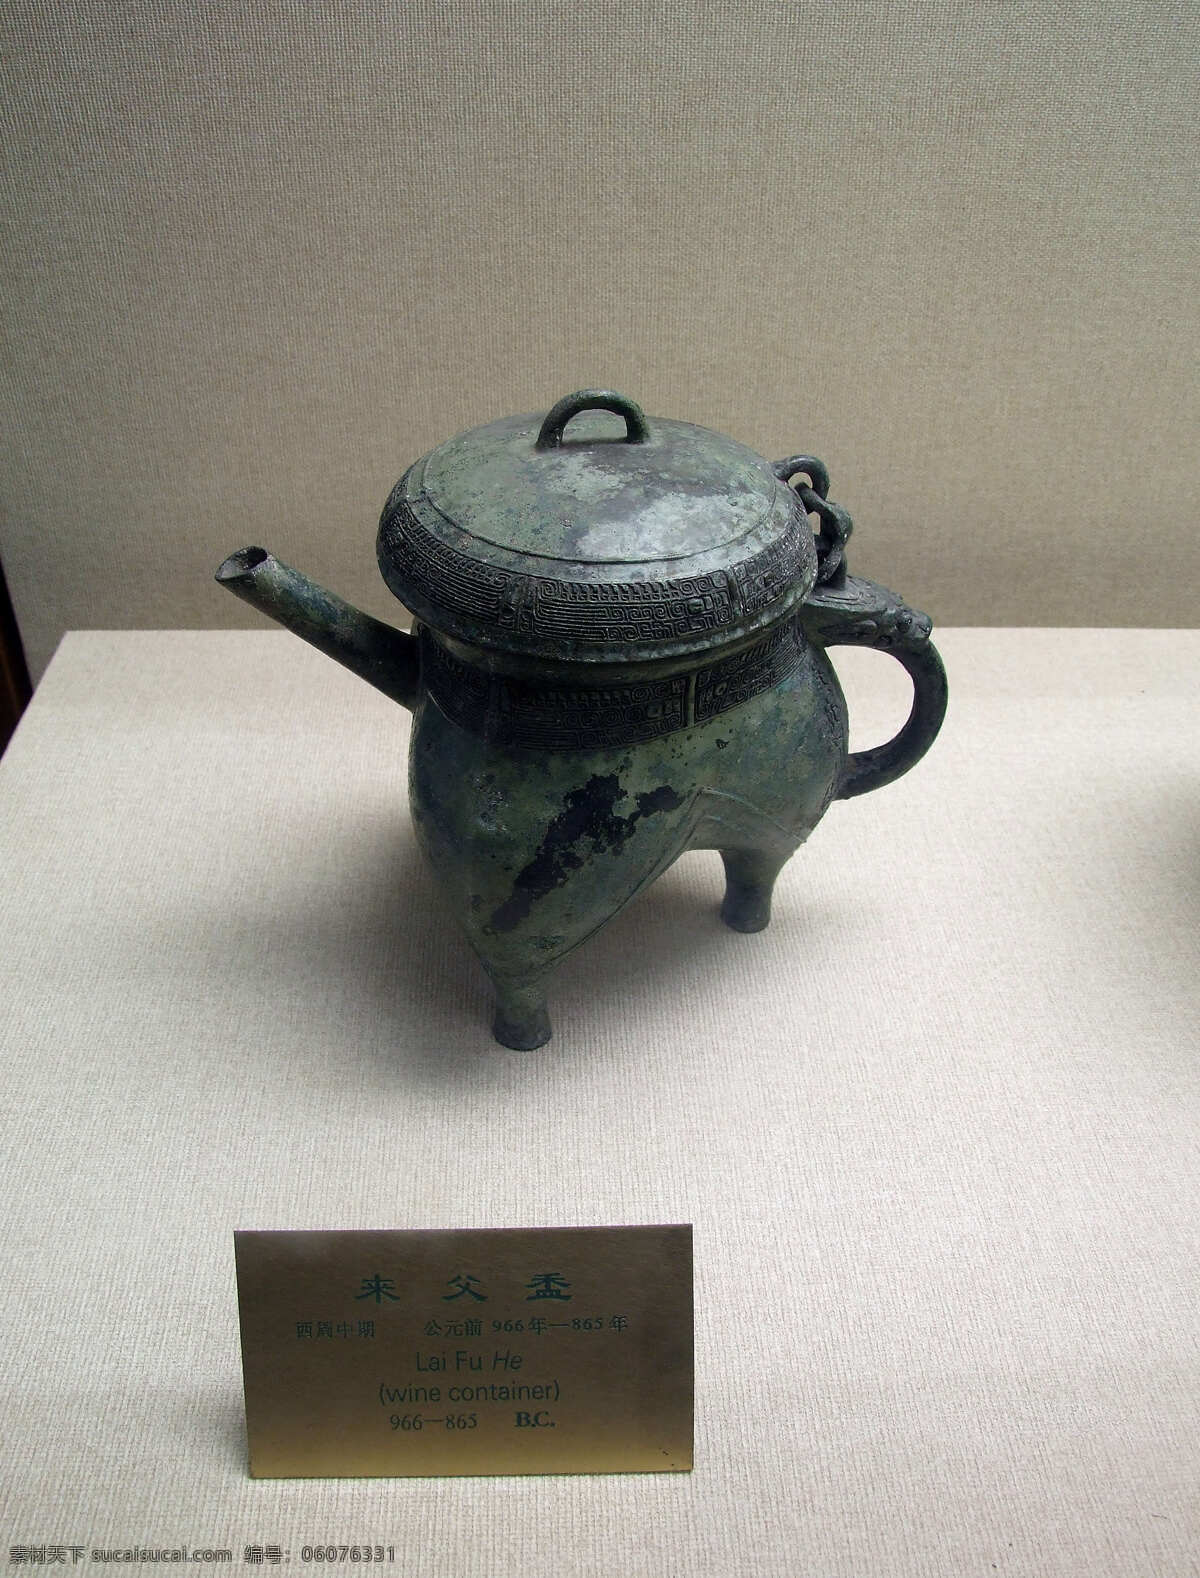 来父盉 西周中期 西周 中期 北京 故宫 古物 古文 古董 文物 茶壶 青铜器 青铜 喝茶 茶具 文化艺术